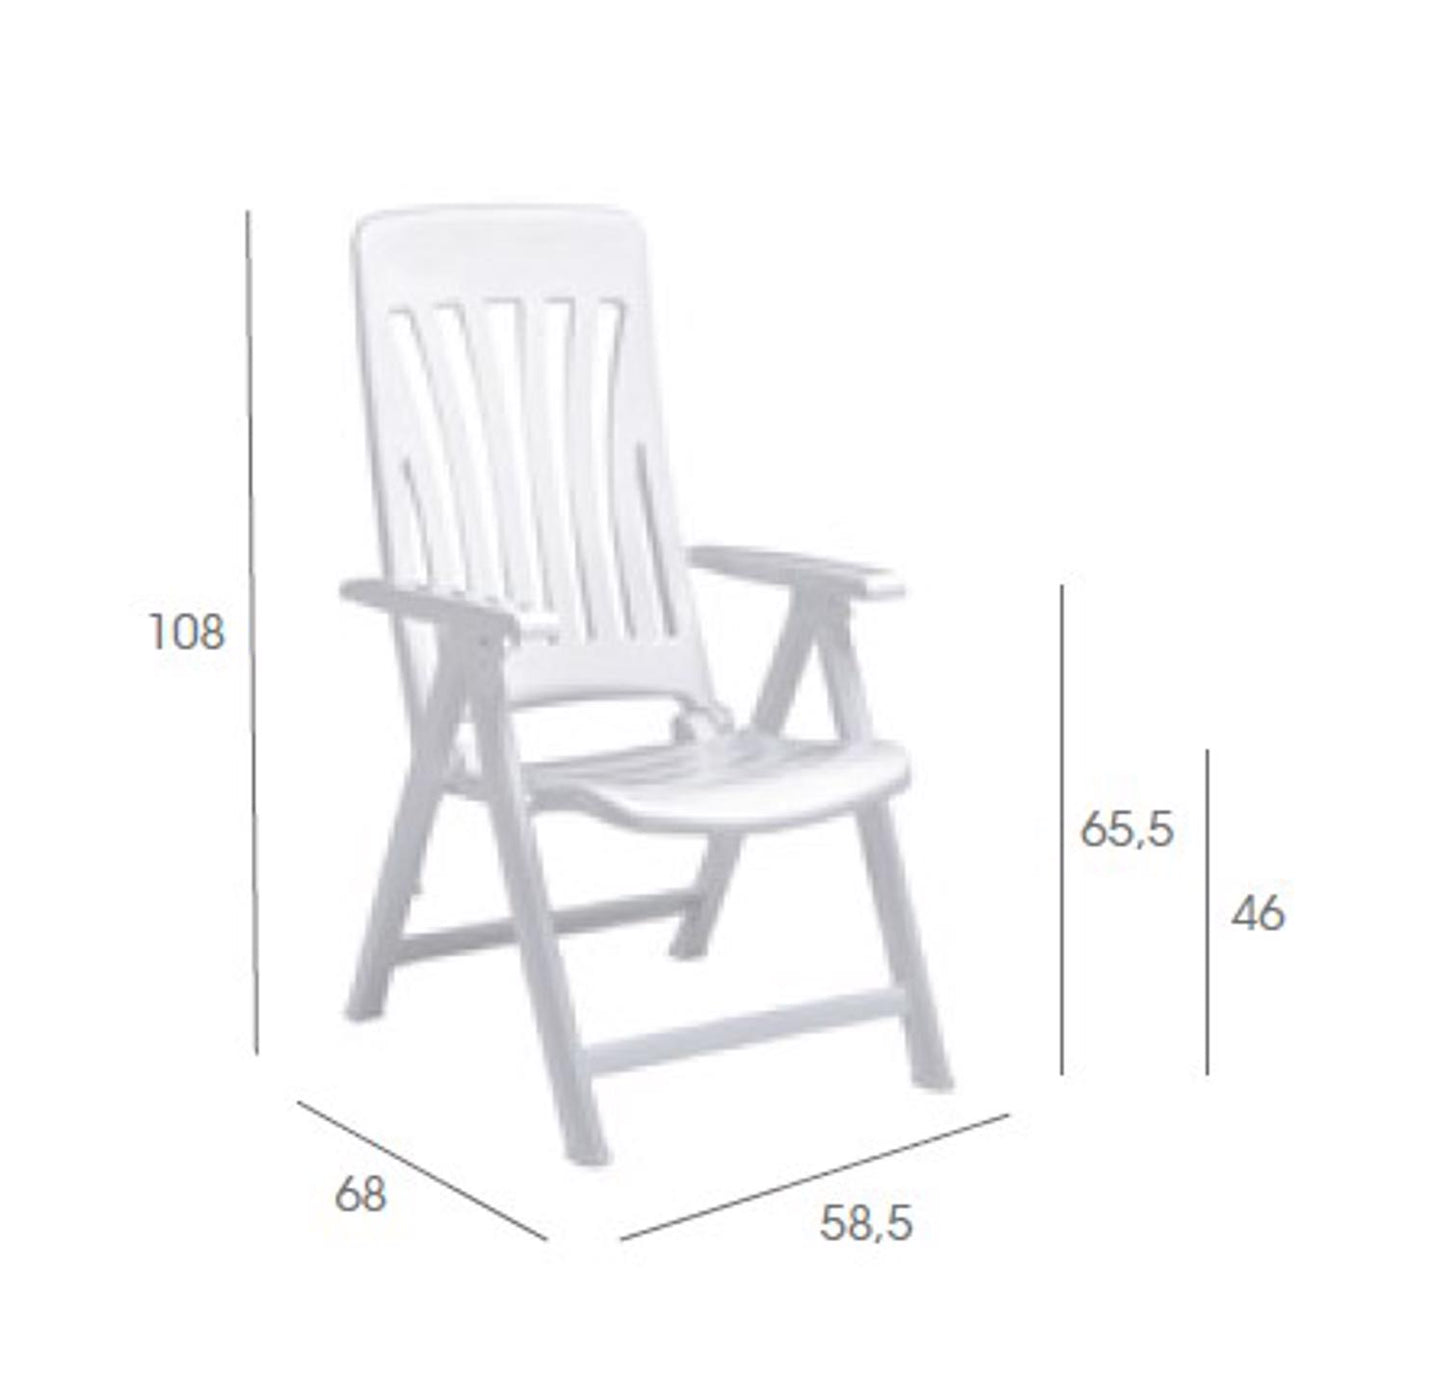 Garbar blanes set 2 silla con brazos multiposiciones exterior blanco